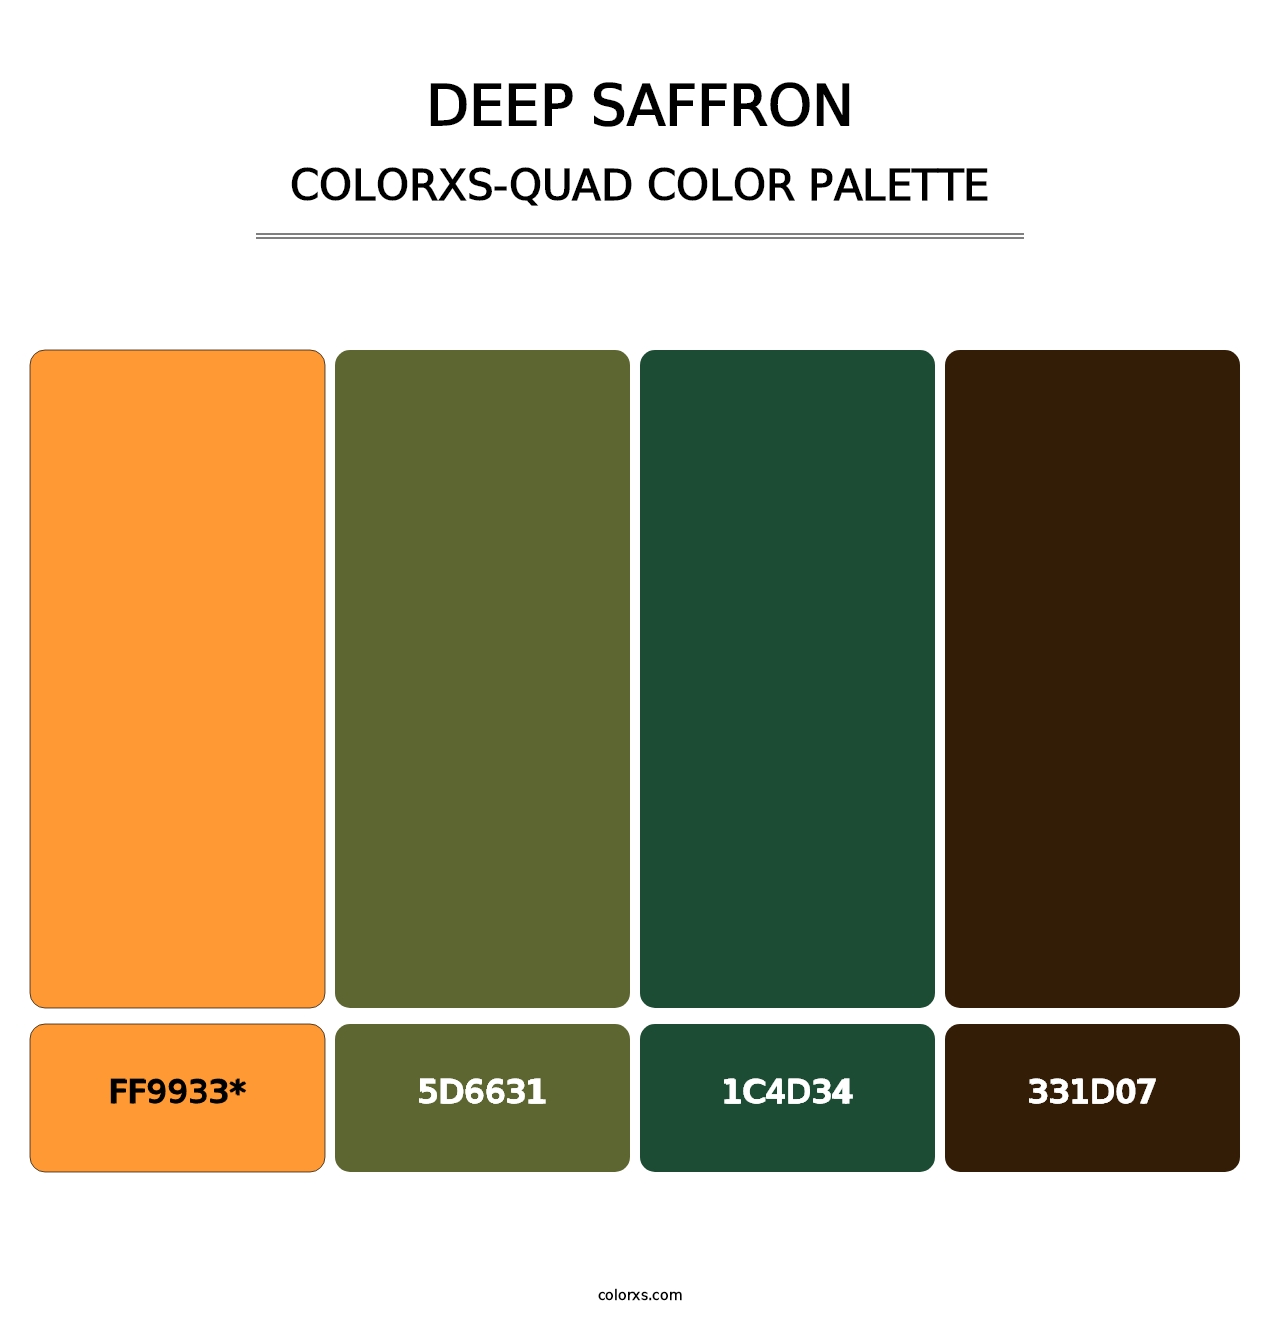 Deep Saffron - Colorxs Quad Palette